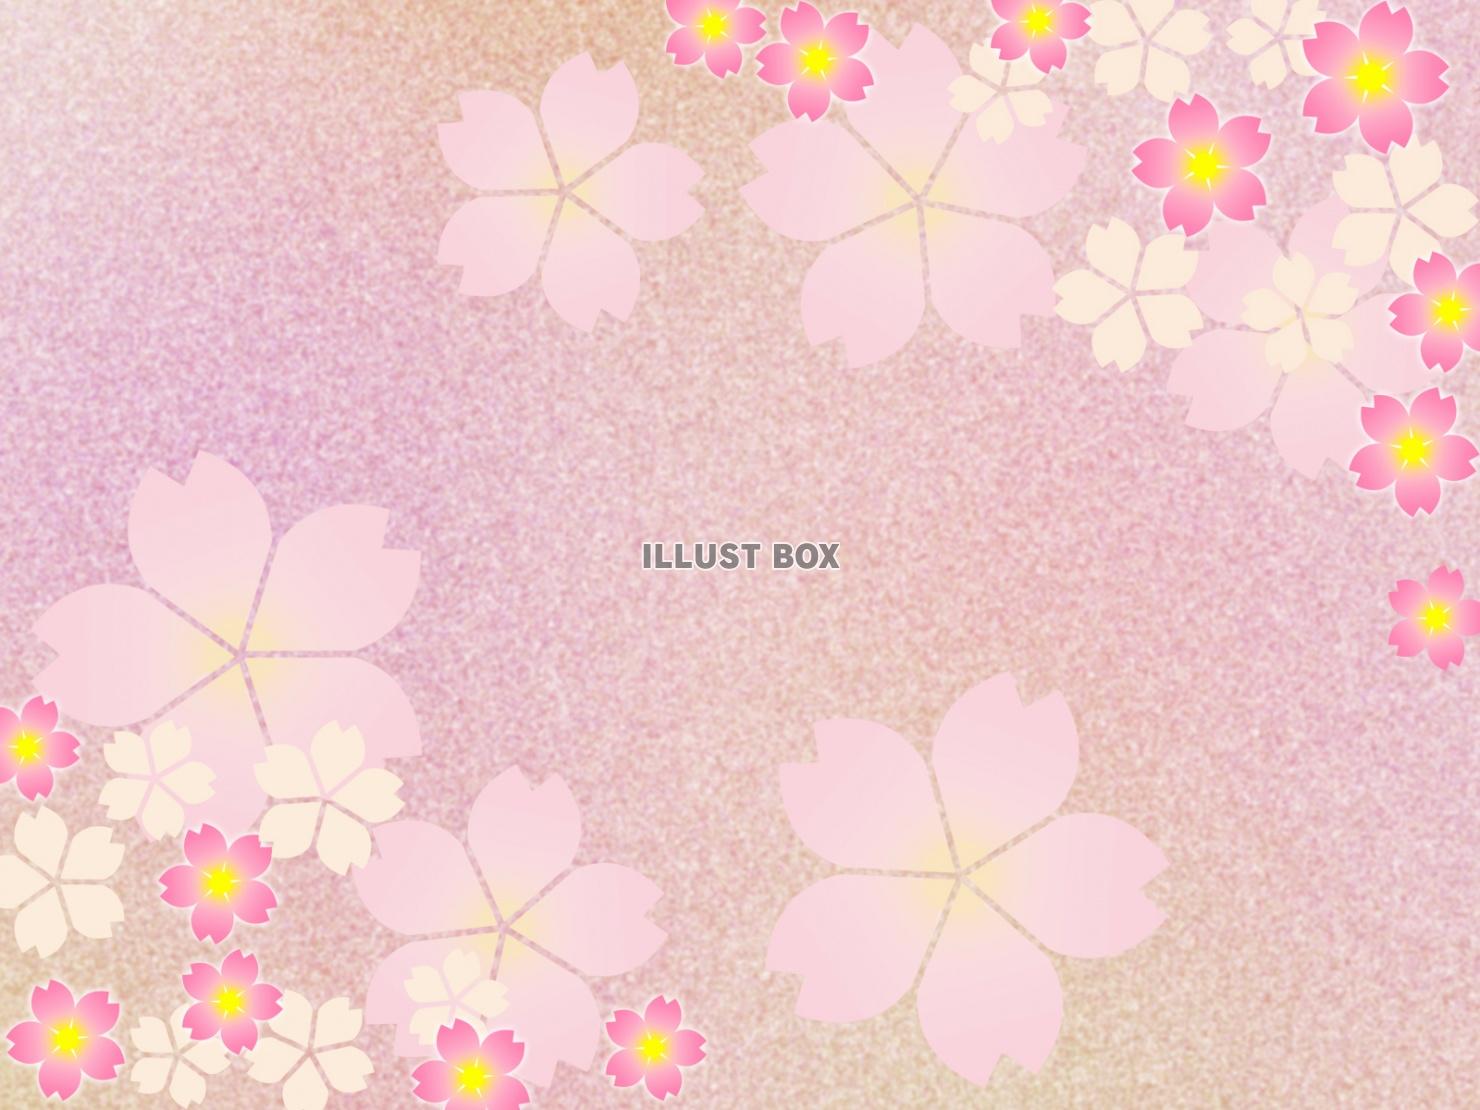 桜の花の壁紙イラスト和風柄の背景素材